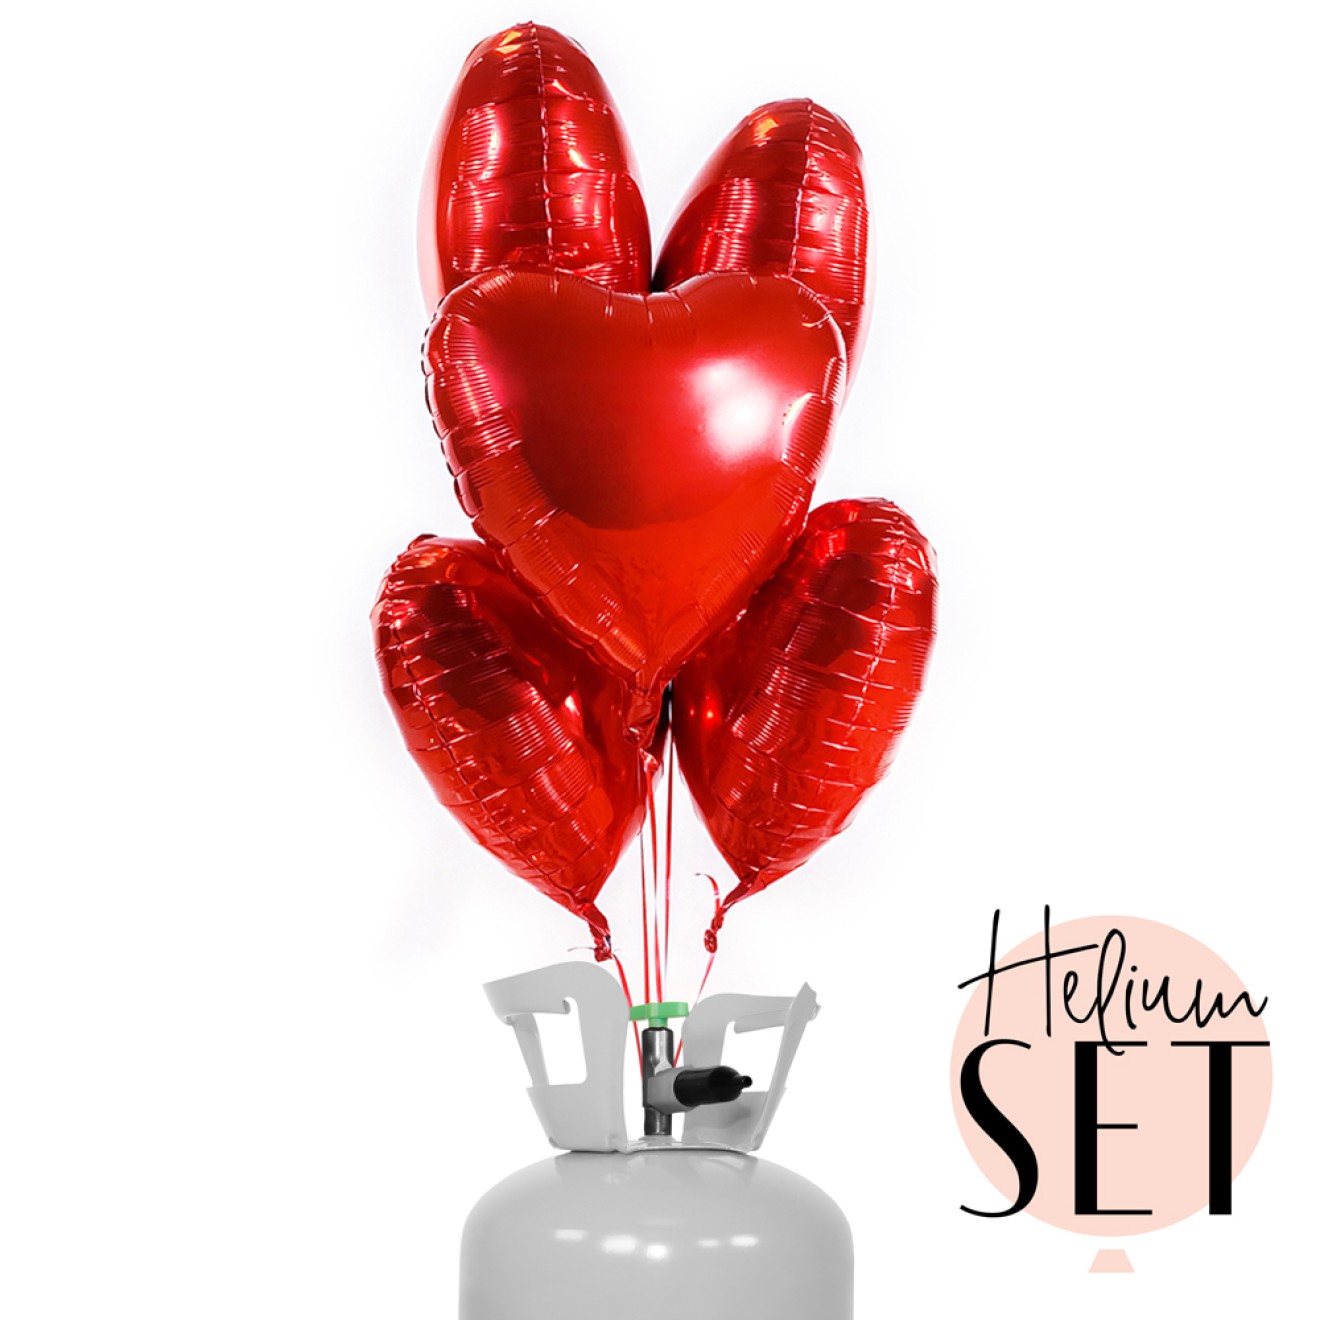 Helium Set - Glossy - Hot Love